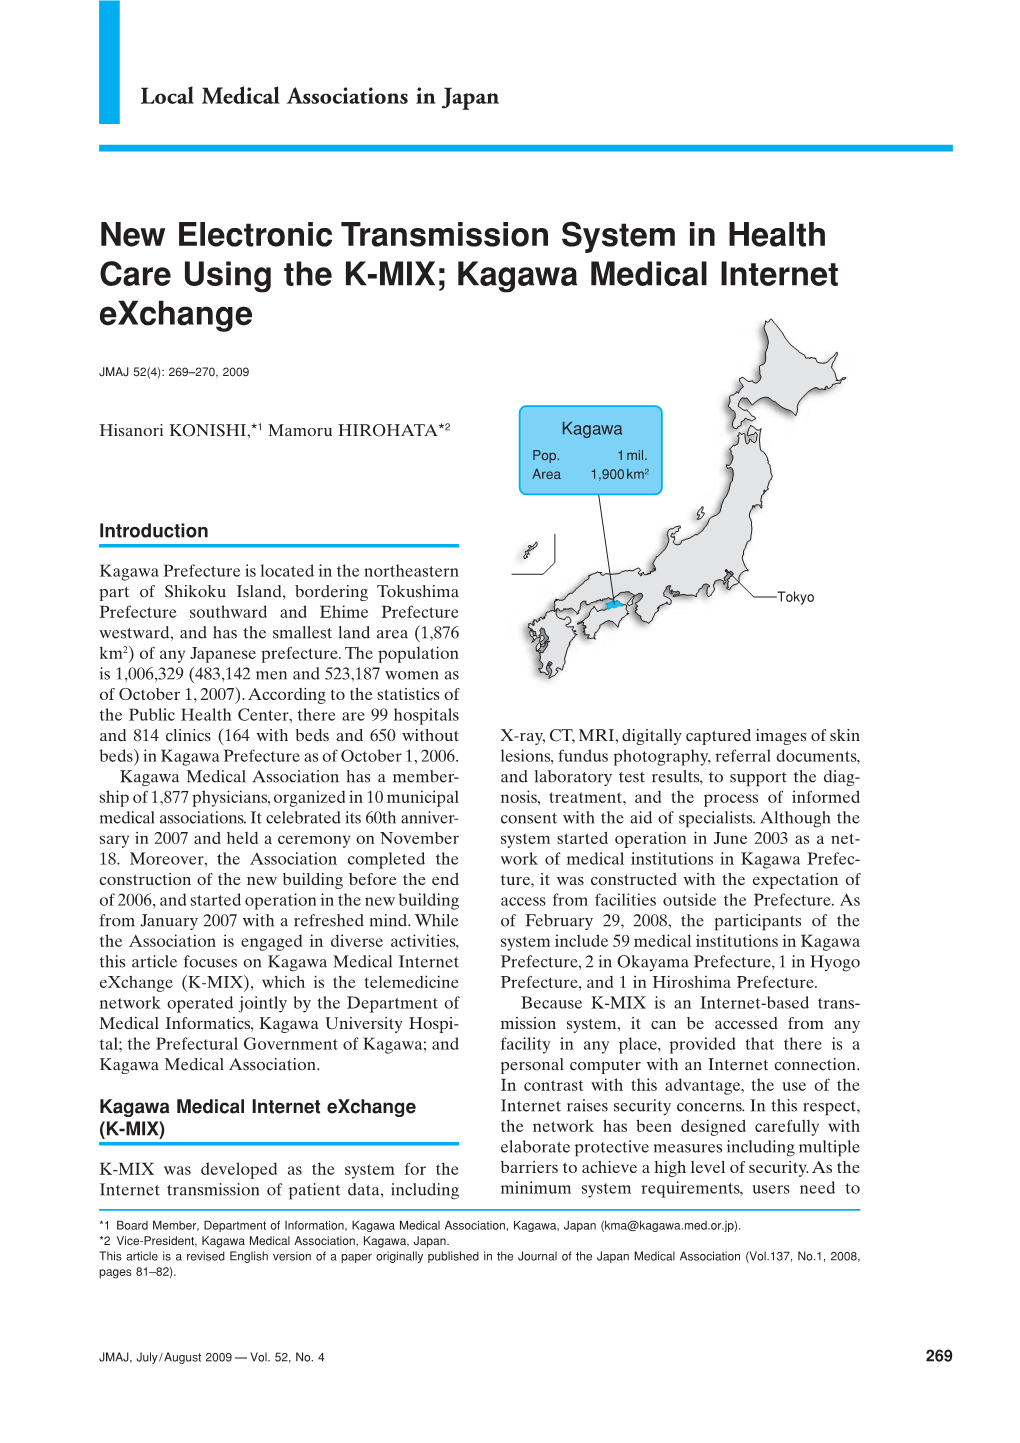 Kagawa Medical Internet Exchange